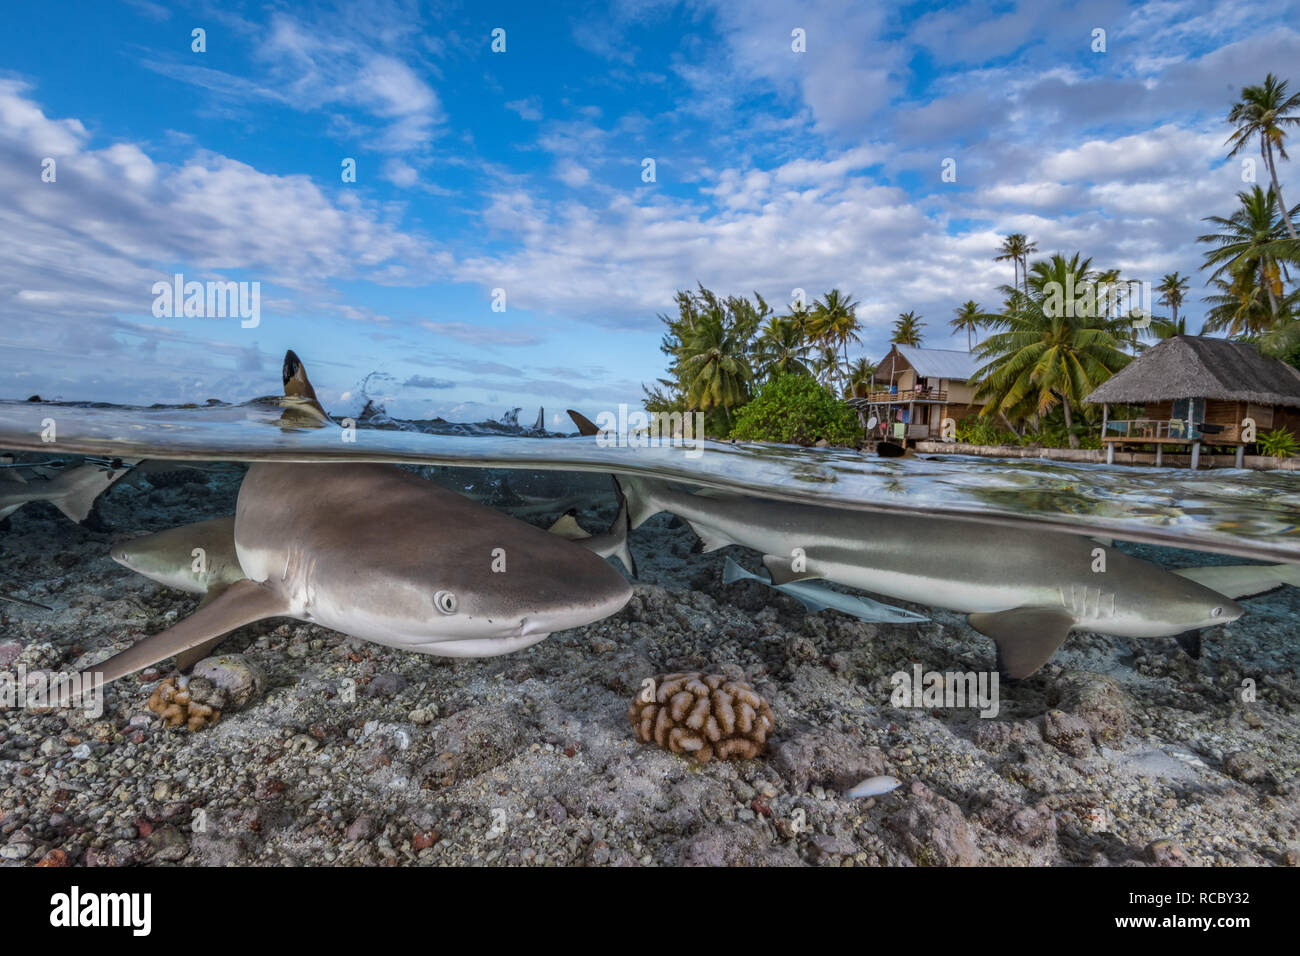 Requin les requins et récifs en face d'une île tropicale avec des palmiers et des huttes Banque D'Images